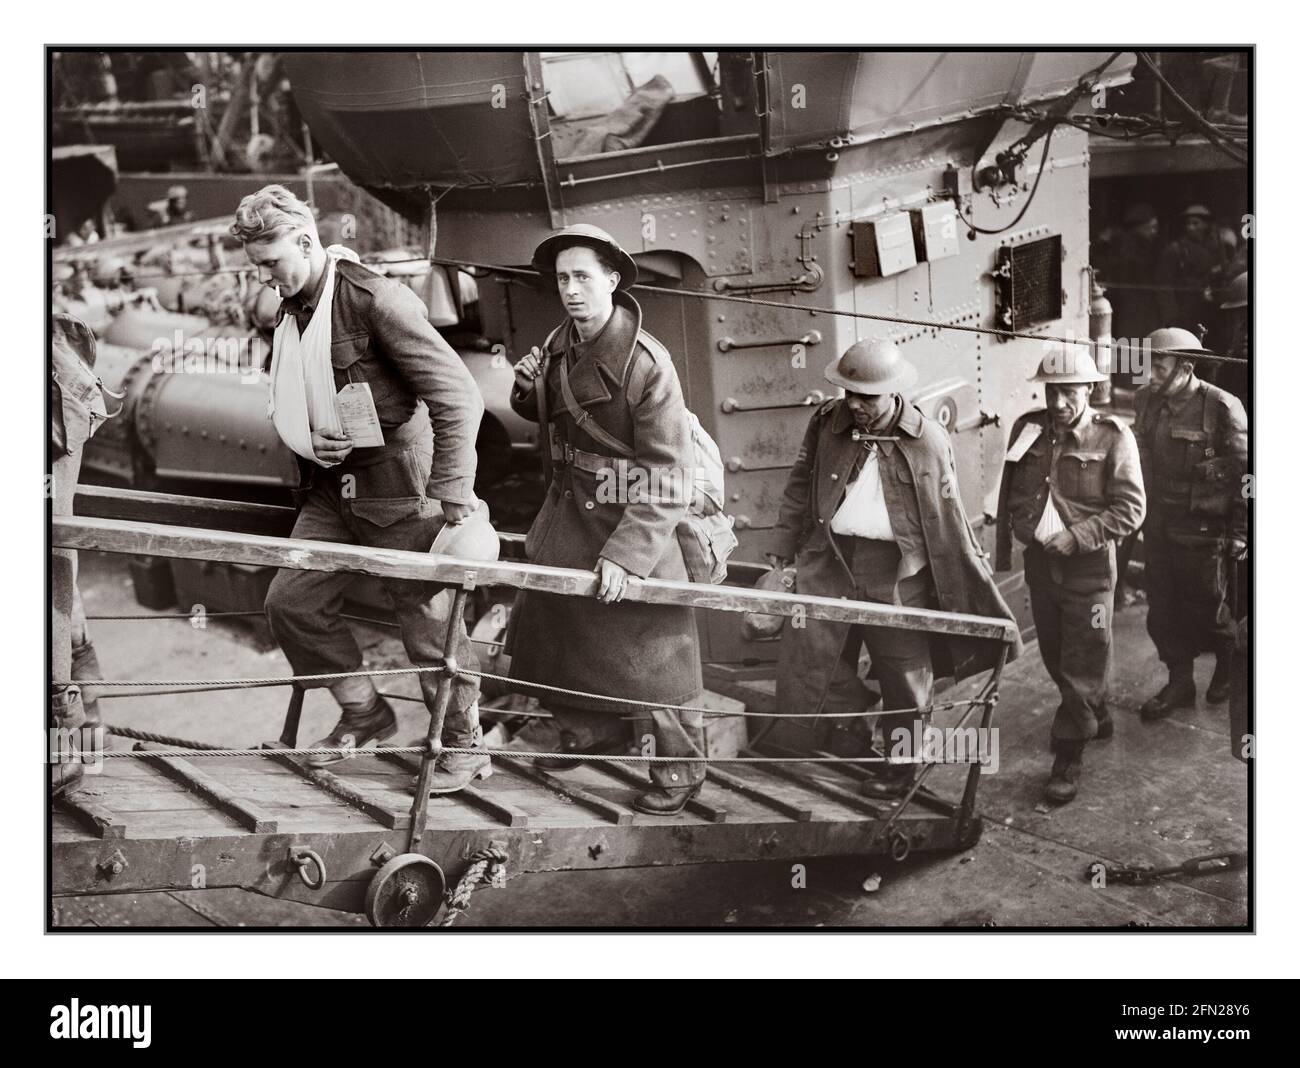 EVAKUIERUNG von DUNKIRK im 2. Weltkrieg Verwundete britische Soldaten, die aus Dunkirk evakuiert wurden, begeben sich am 31. Mai 1940 von einem Zerstörer der Royal Navy in Dover auf die Gangplanke. Zweiter Weltkrieg Stockfoto